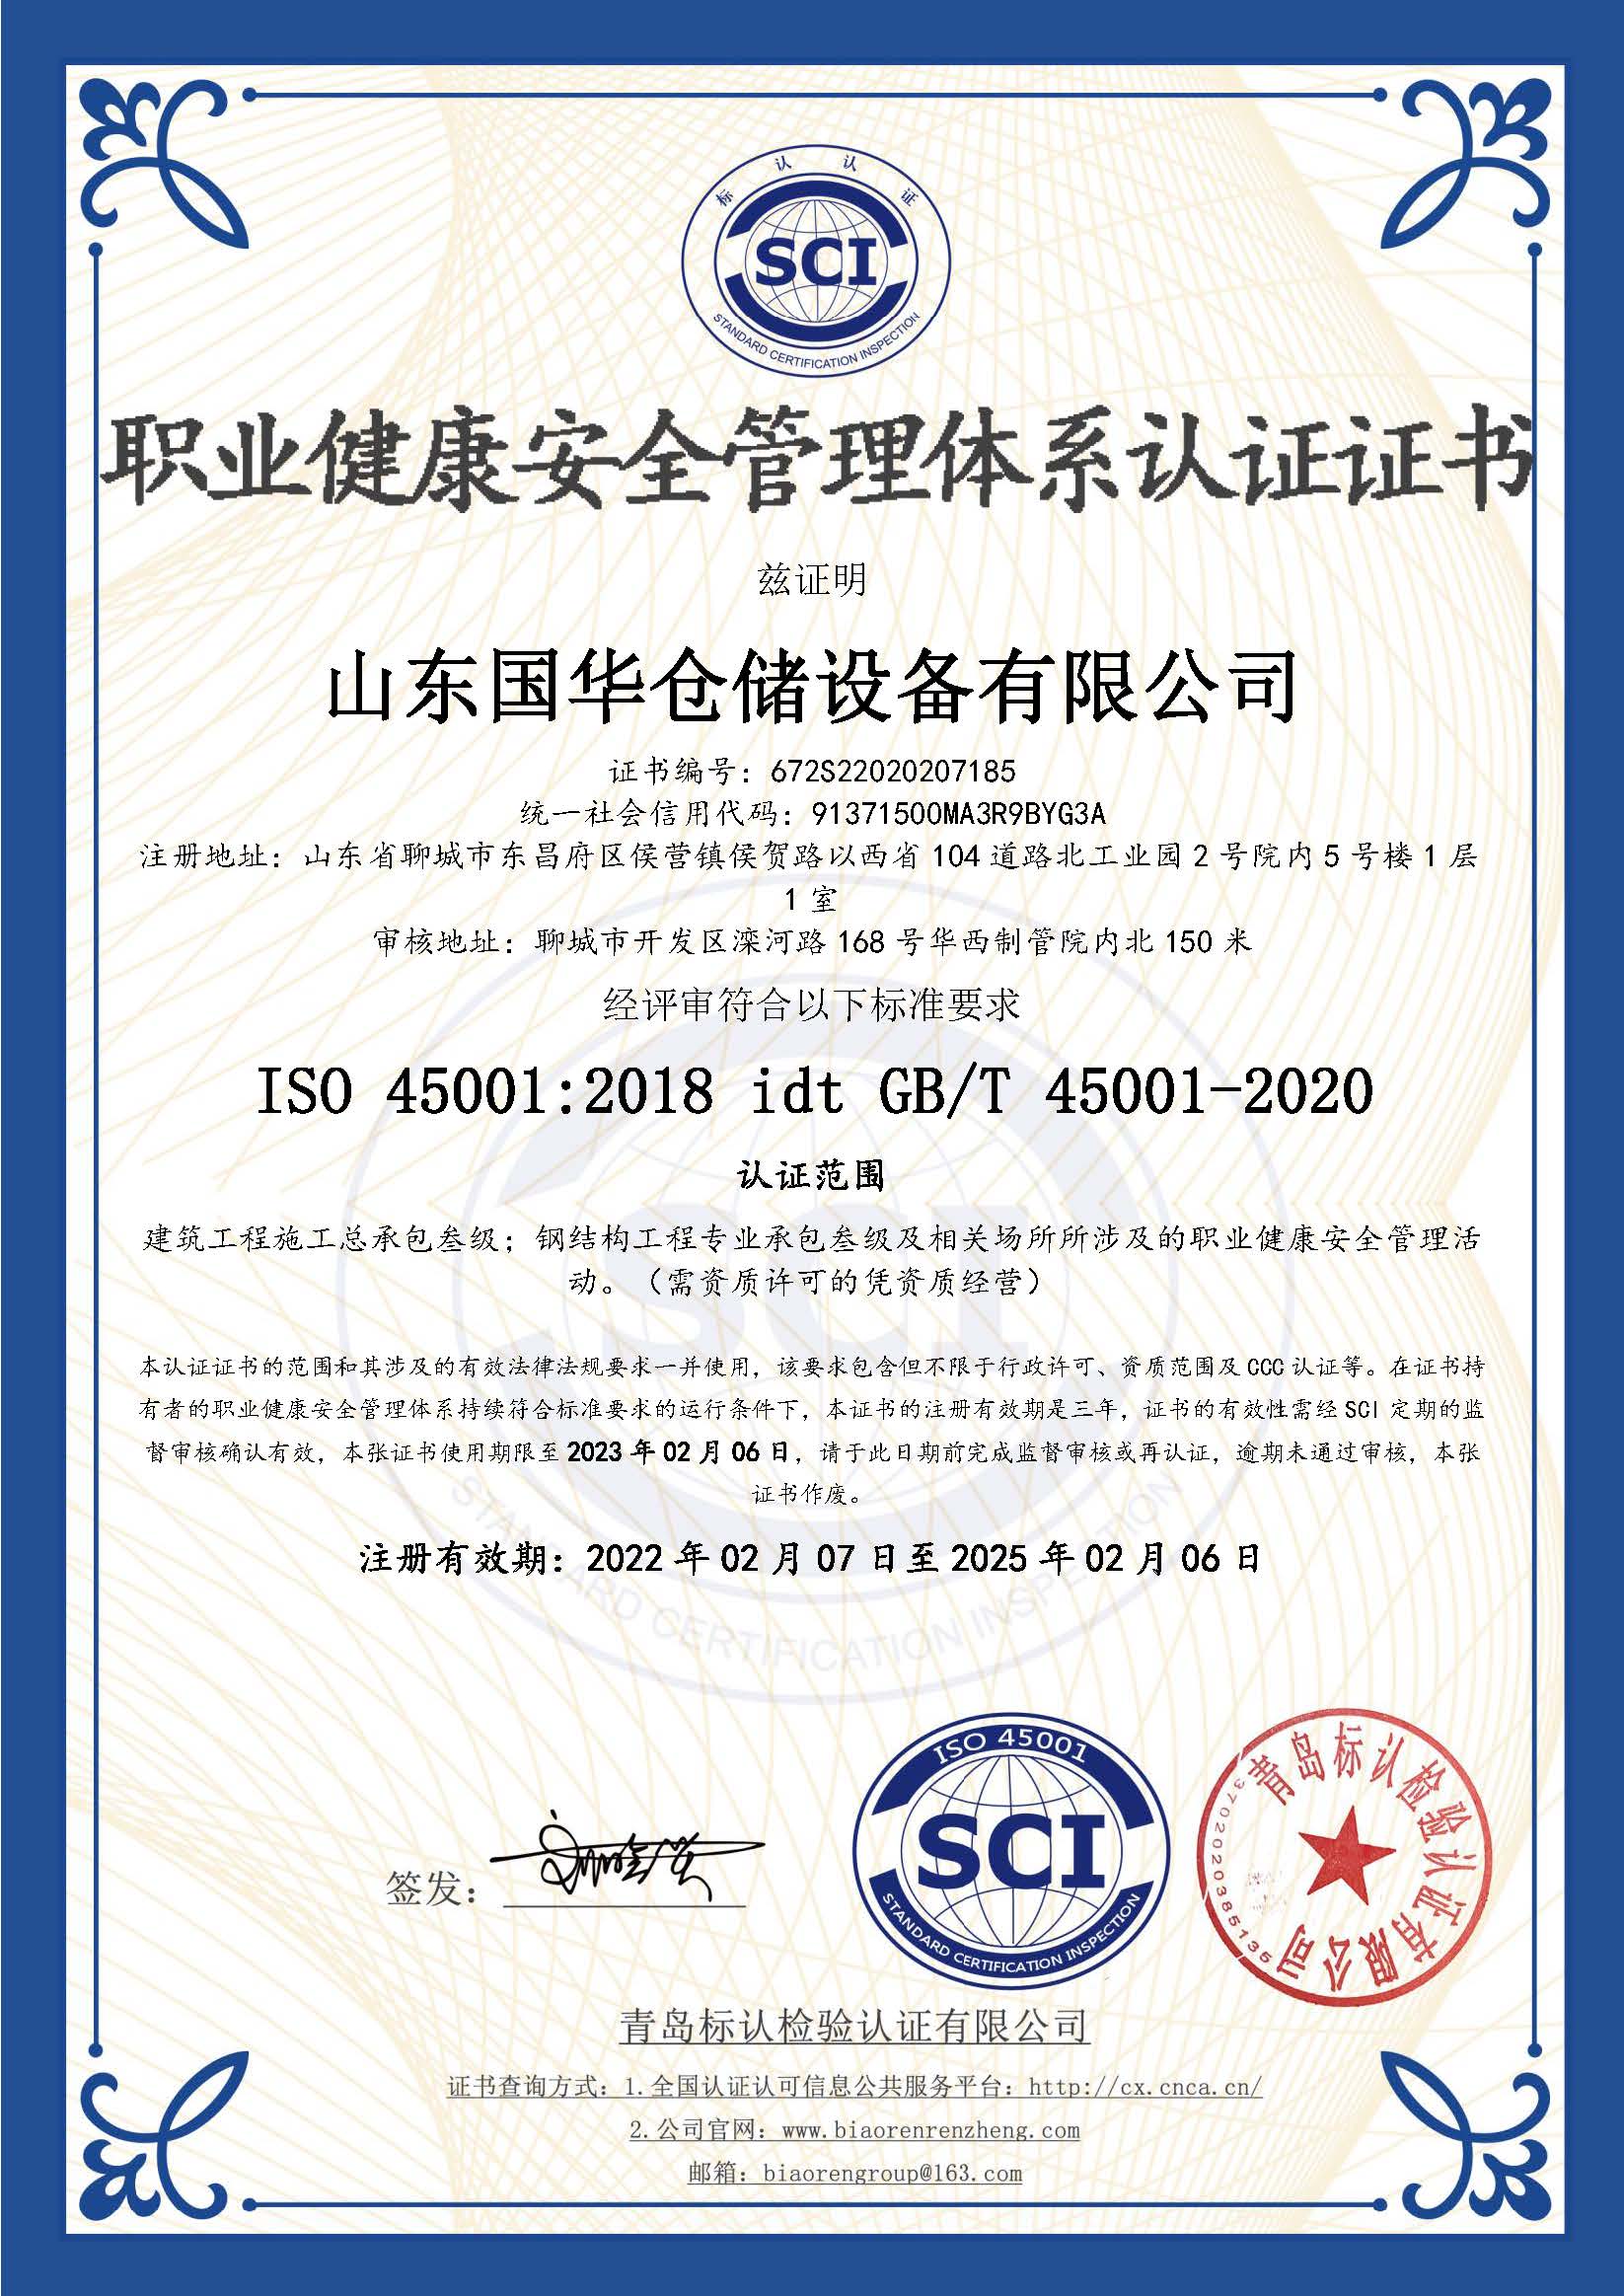 延边朝鲜族钢板仓职业健康安全管理体系认证证书